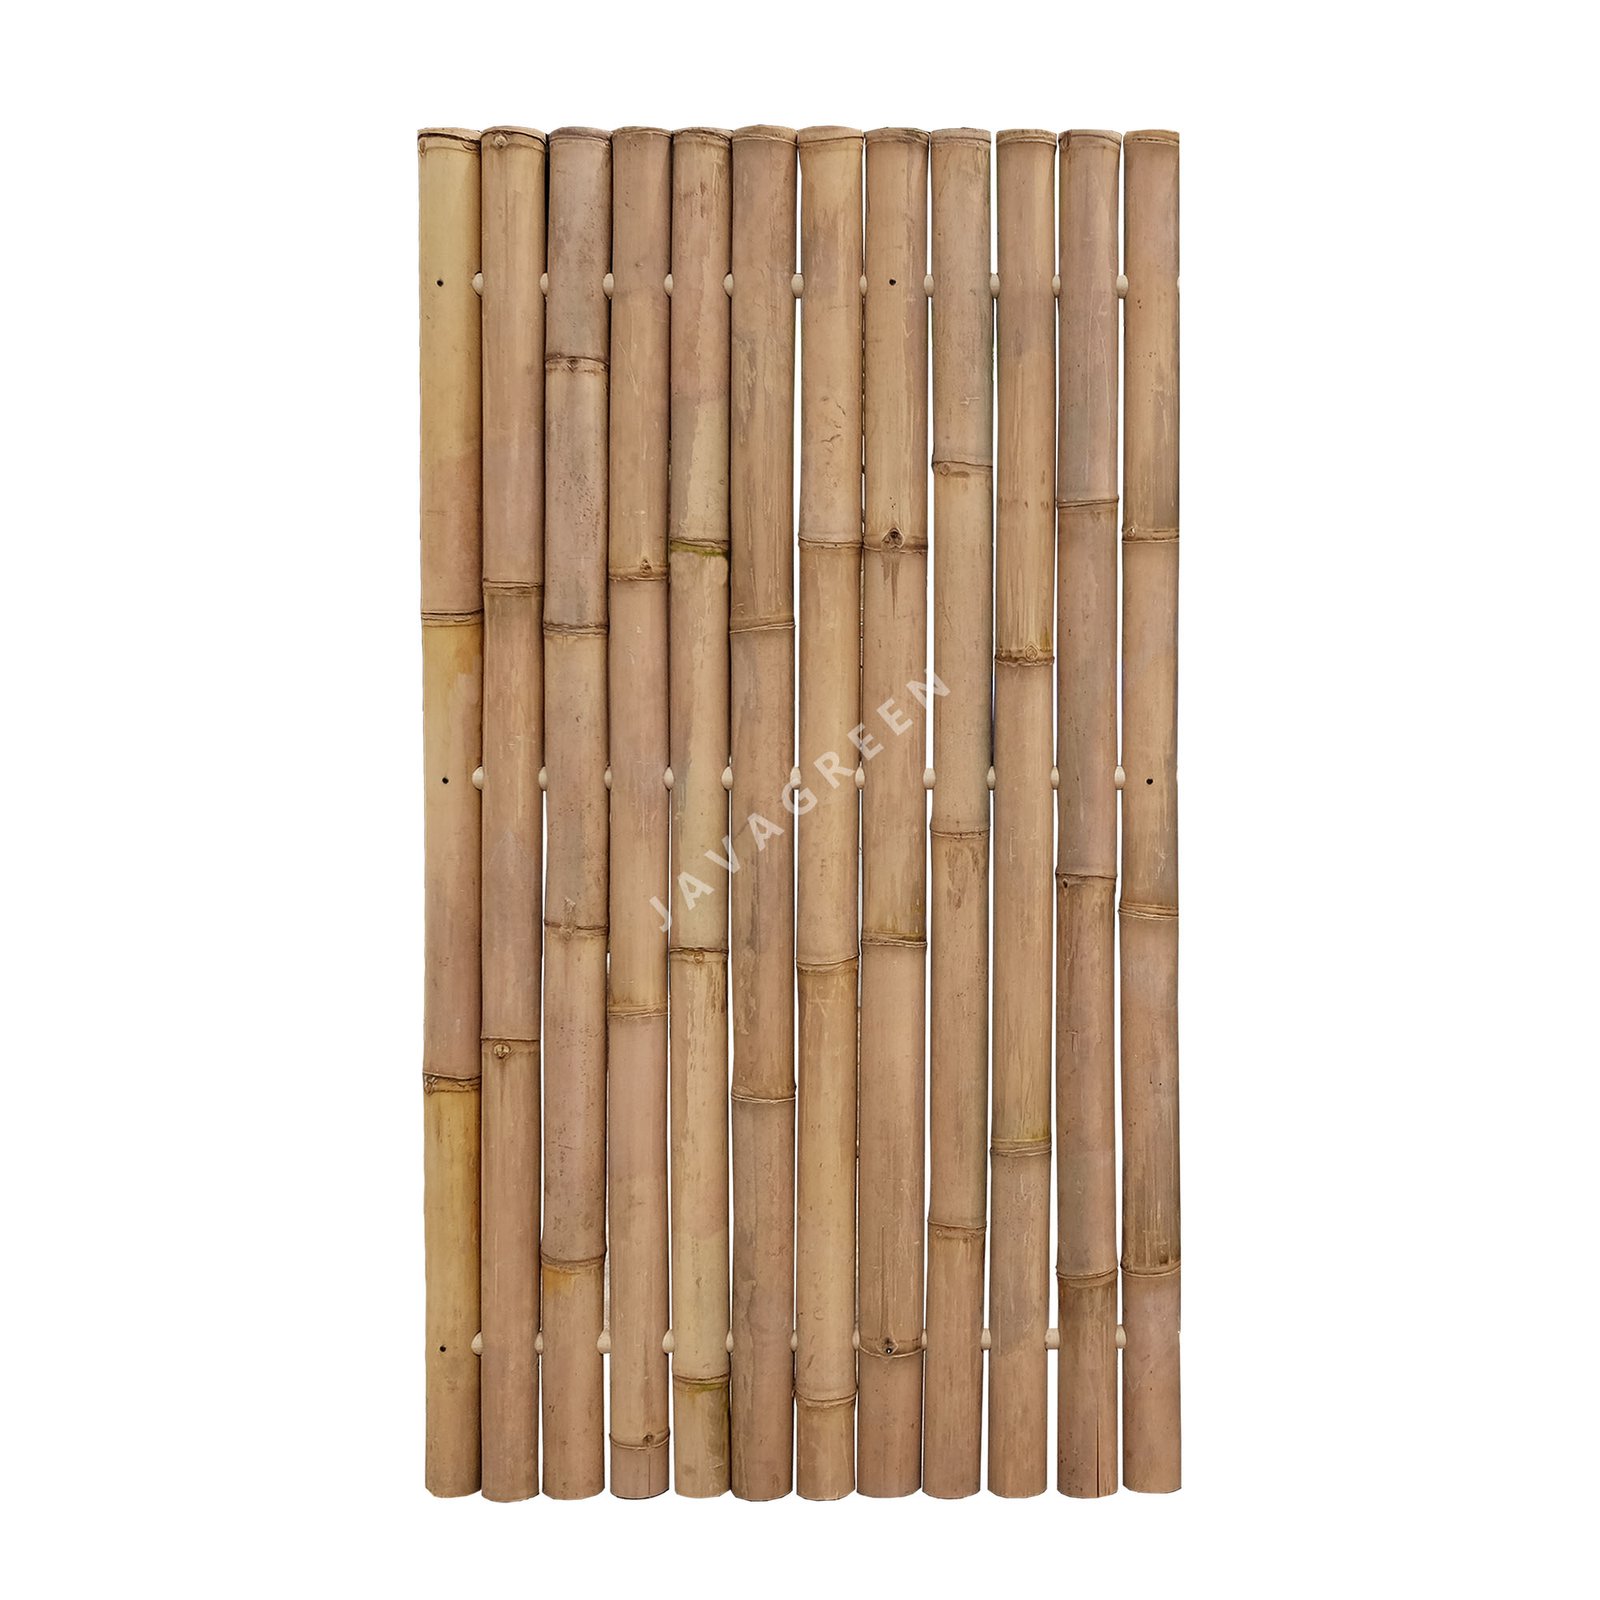 Whole Bamboo Fence